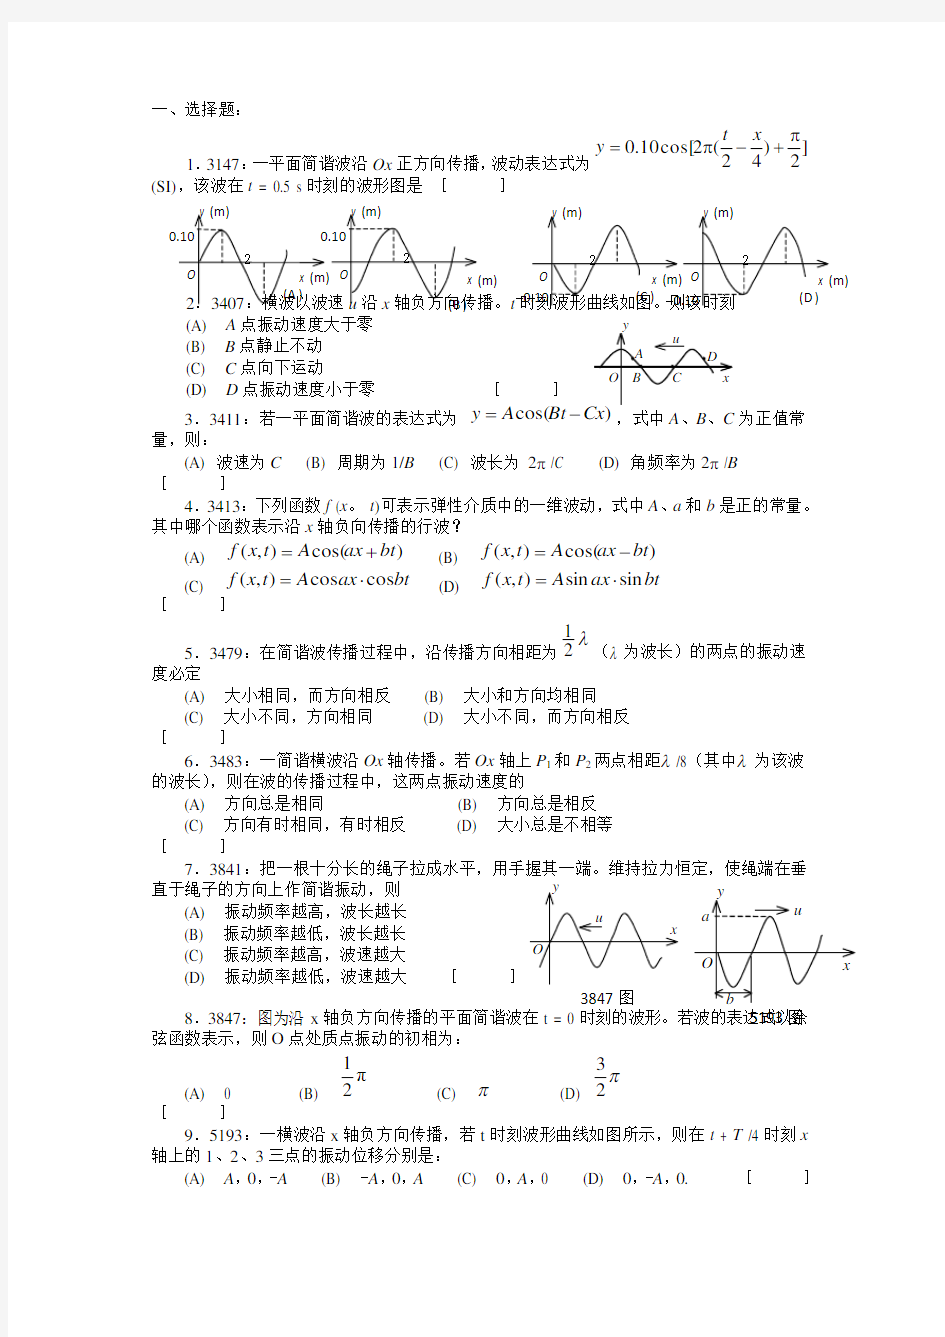 清华大学《大学物理》习题库试题及答案__05_机械波习题